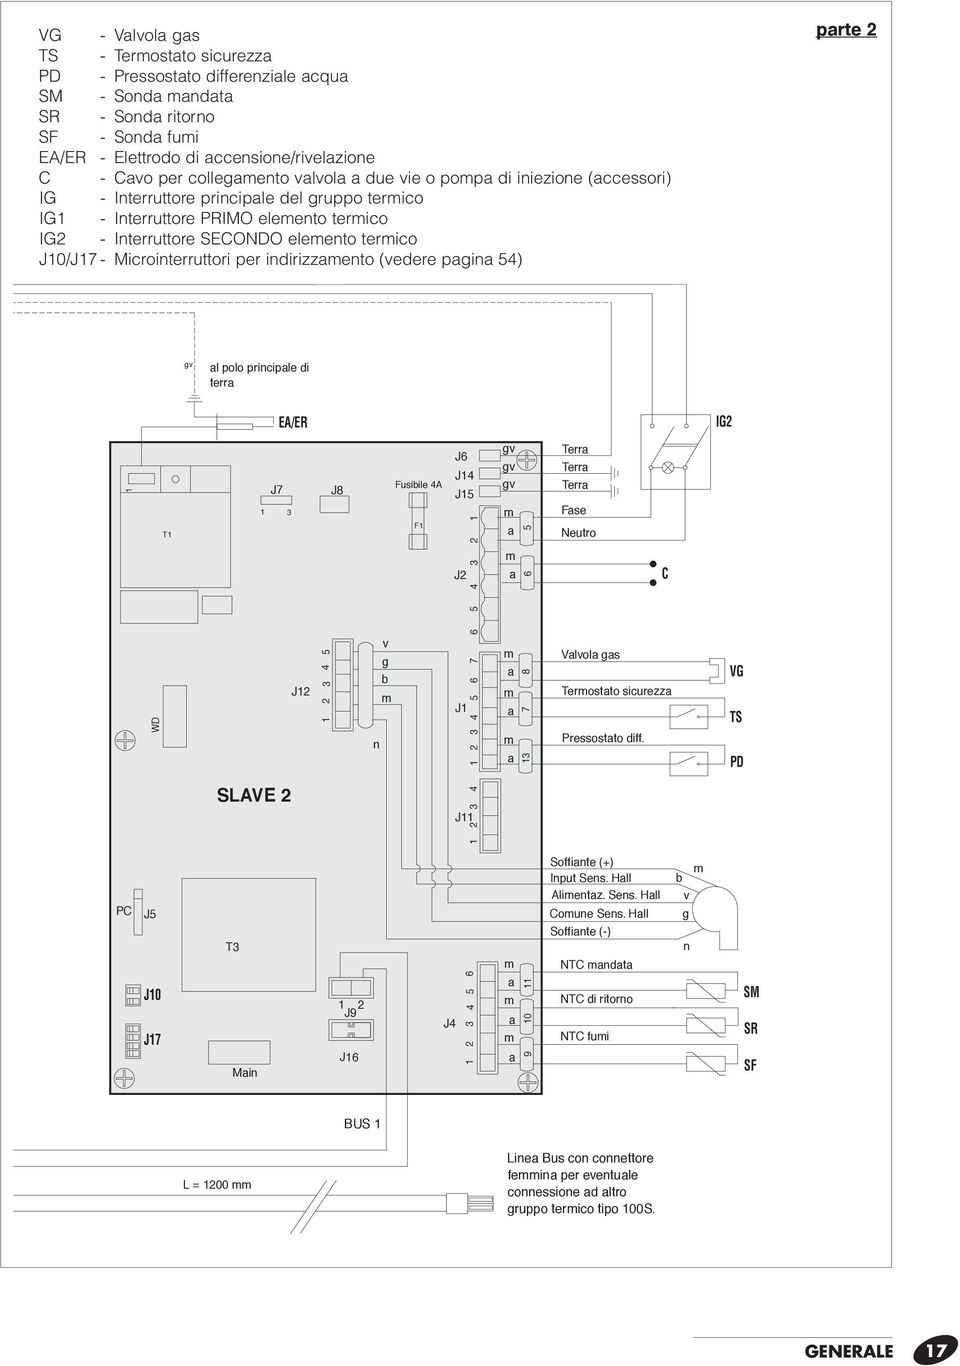 Microinterruttori per indirizzaento (vedere pagina 54) parte 2 gv al polo principale di terra EA/ER T J7 3 J8 Fusibile 4A F J6 J4 J5 J2 3 2 WD J2 v g b n J J Valvola gas Terostato sicurezza 4 IG2 gv